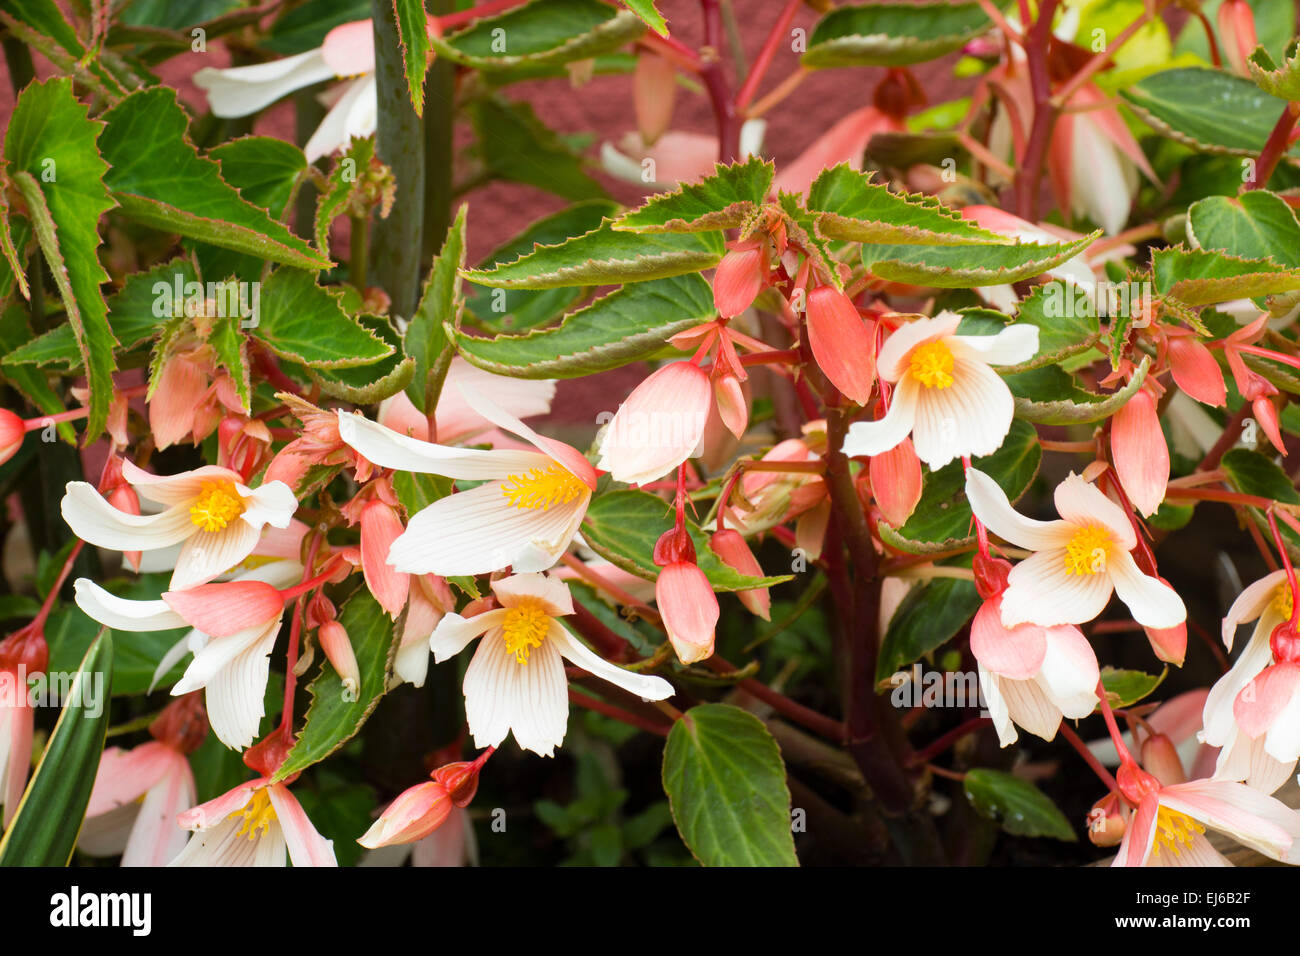 El melocotón y flores blancas de la licitación, trailing perenne, Begonia 'Million besos elegancia' Foto de stock